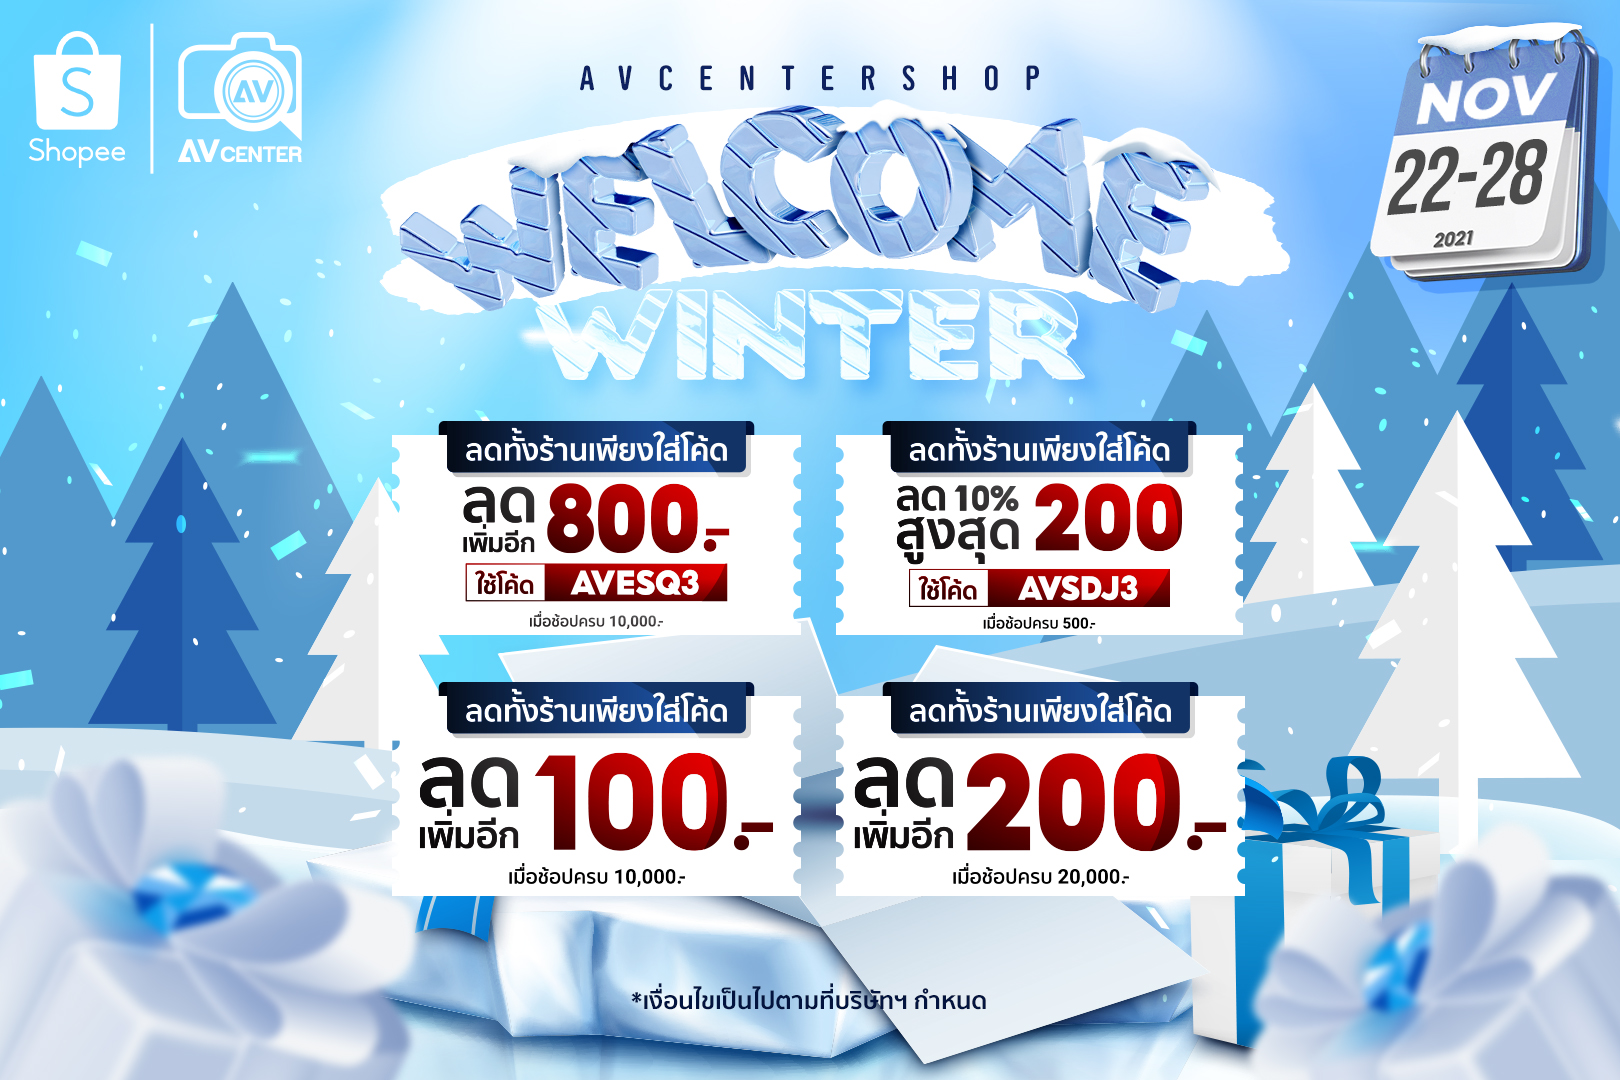 Welcome Winter Sale รวมอุปกรณ์มาลดเร็ว เซลคลายหนาว